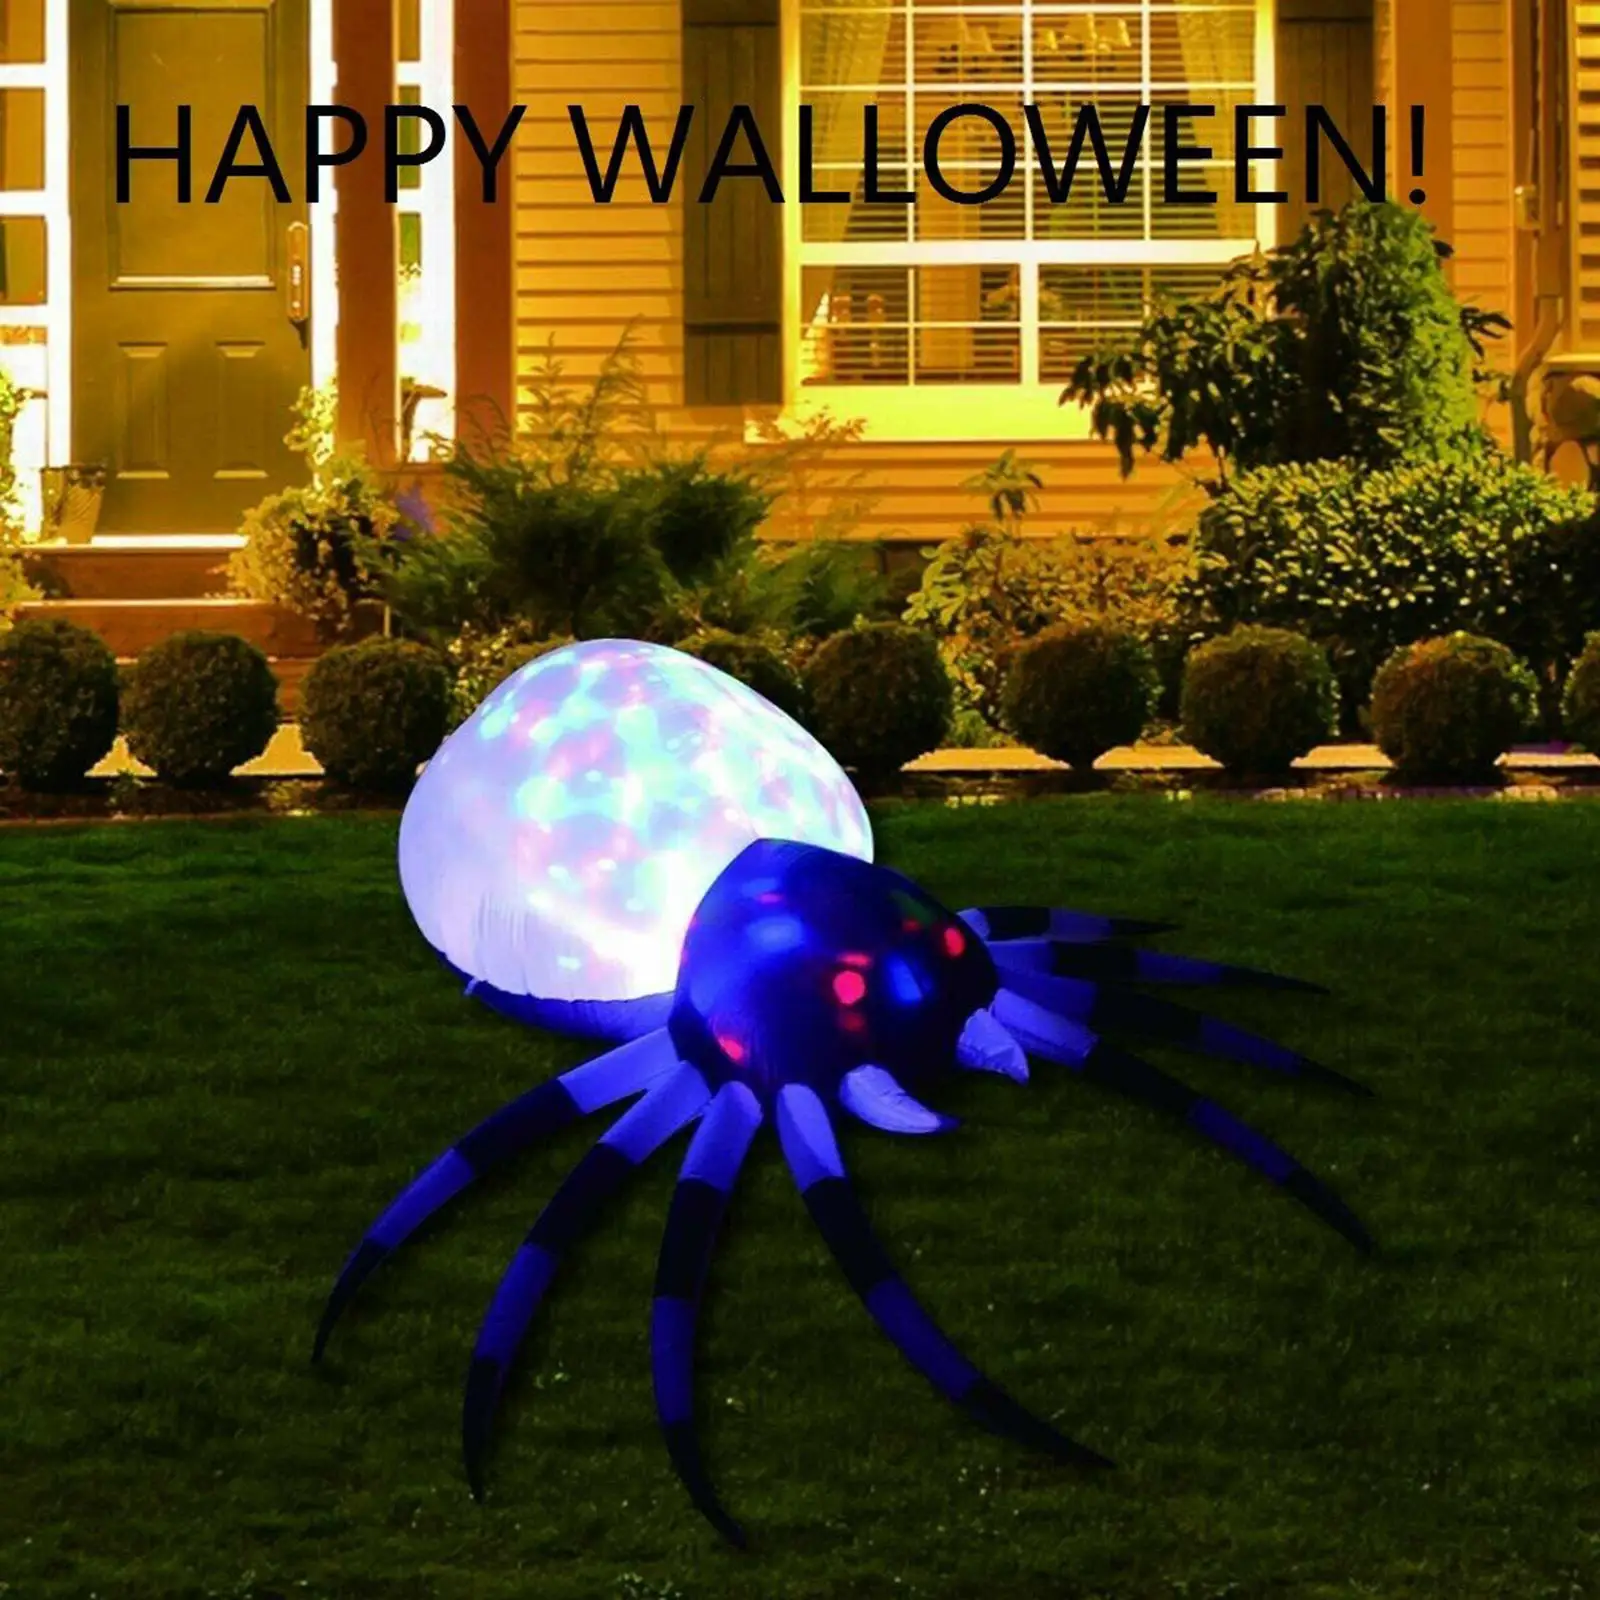 

Гигантский надувной паук, украшение для заднего двора в виде животного на Хэллоуин, модель черного паука 2,4 м фута, воздушный шар